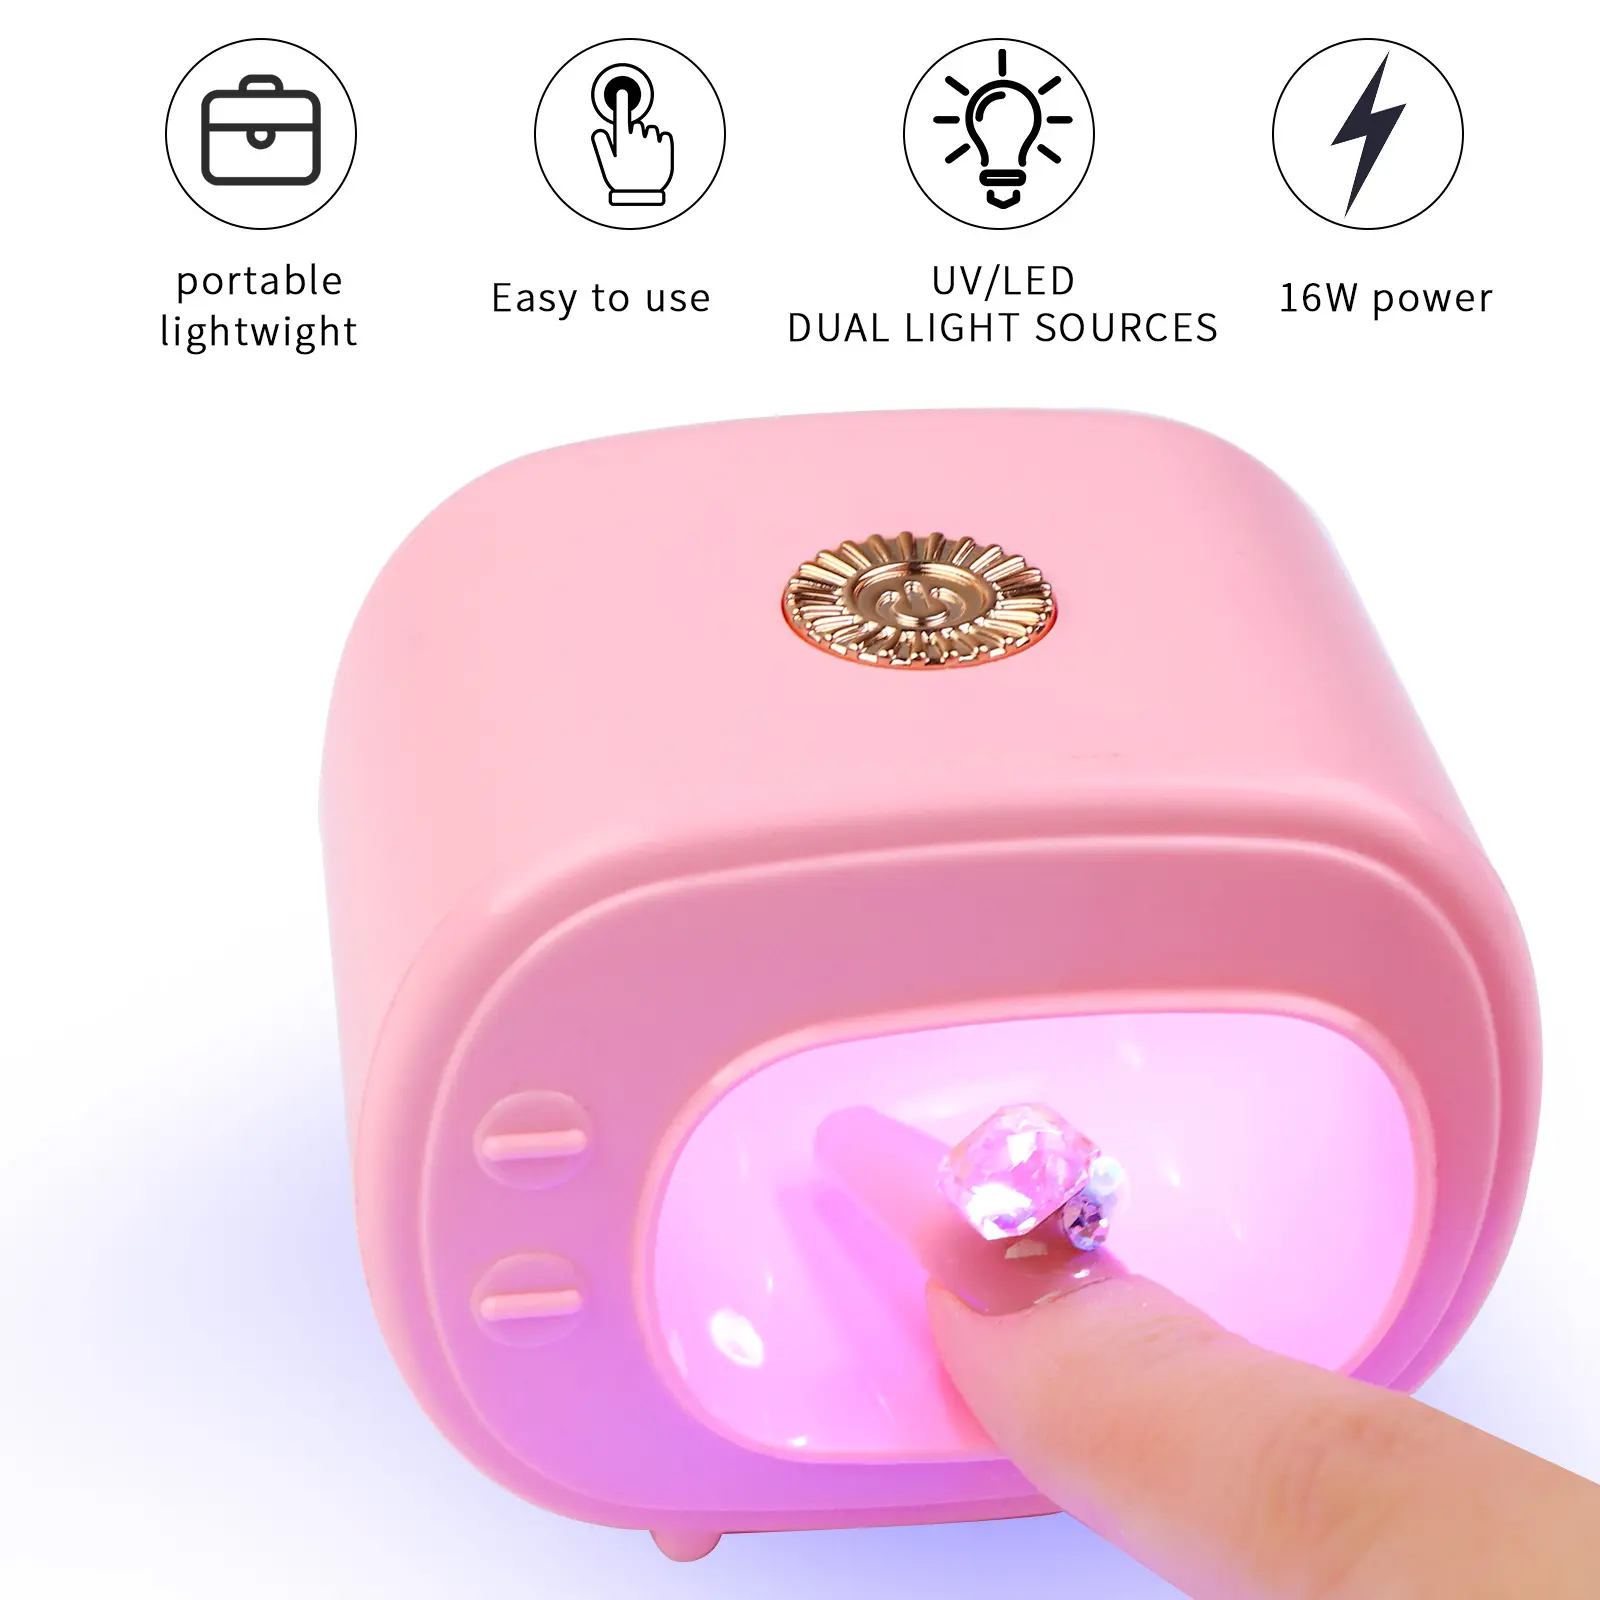 16W USB 미니 TV 네일 램프 UV Led 램프 손톱 액세서리 및 도구를 핑크 매니큐어 건조기 휴대용 매니큐어 제품